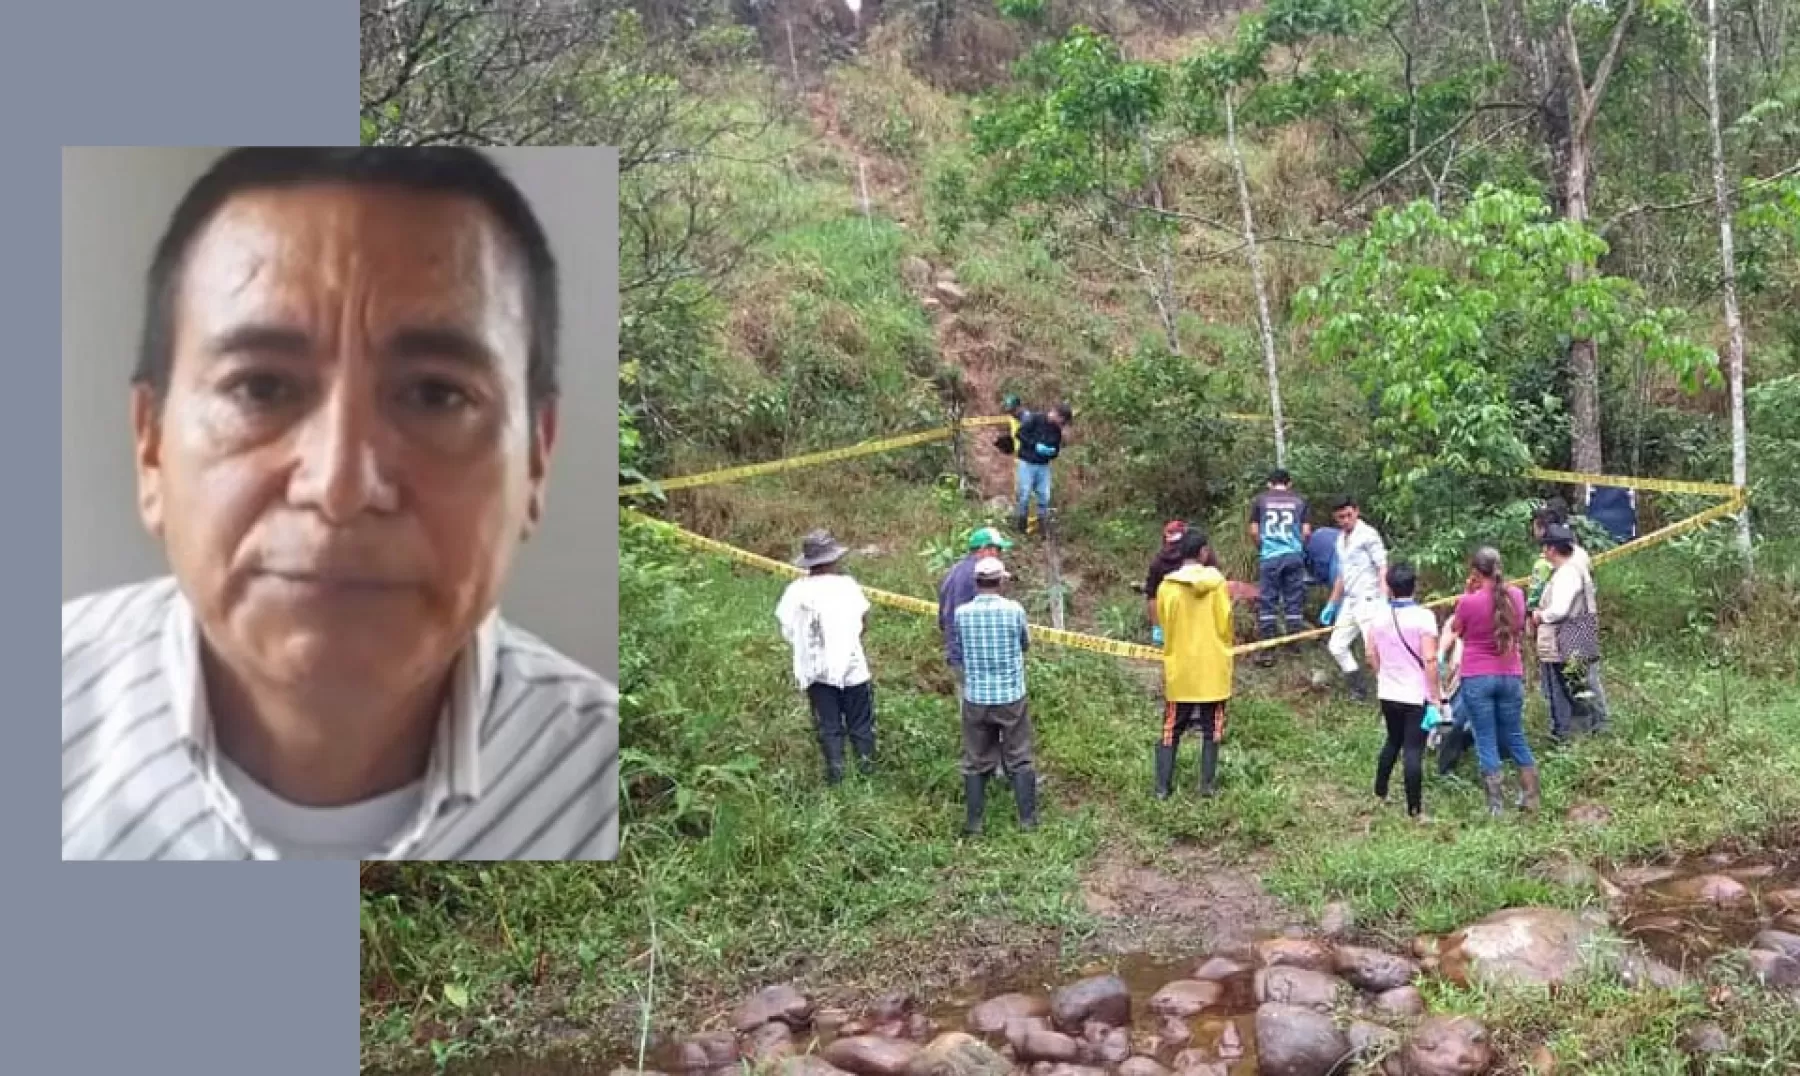 La Asociación Campesina de Arauca - ACA, denunció que lider comunal de Tame asesinado en área rural fue asesinado con sevicia.